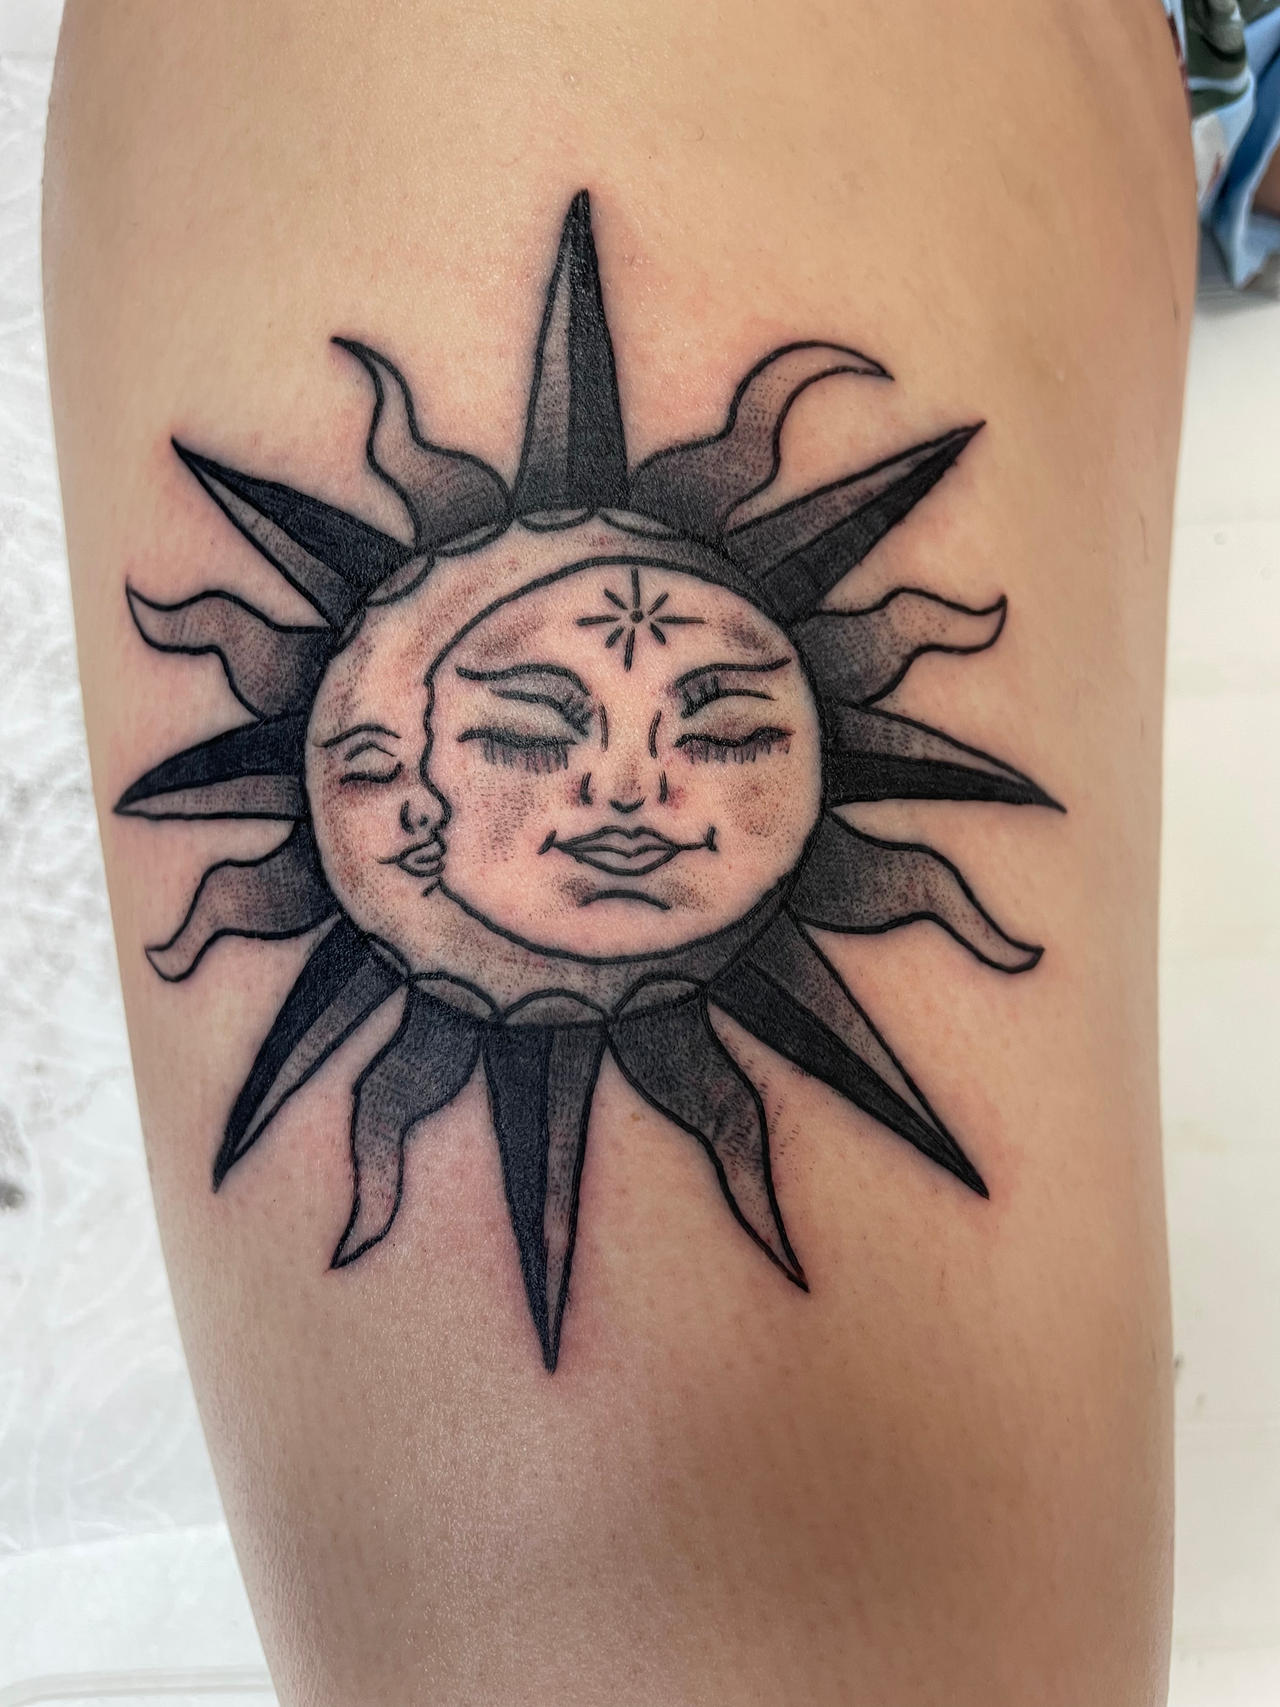 Sun/moon tattoo by malooosTATTZ on DeviantArt